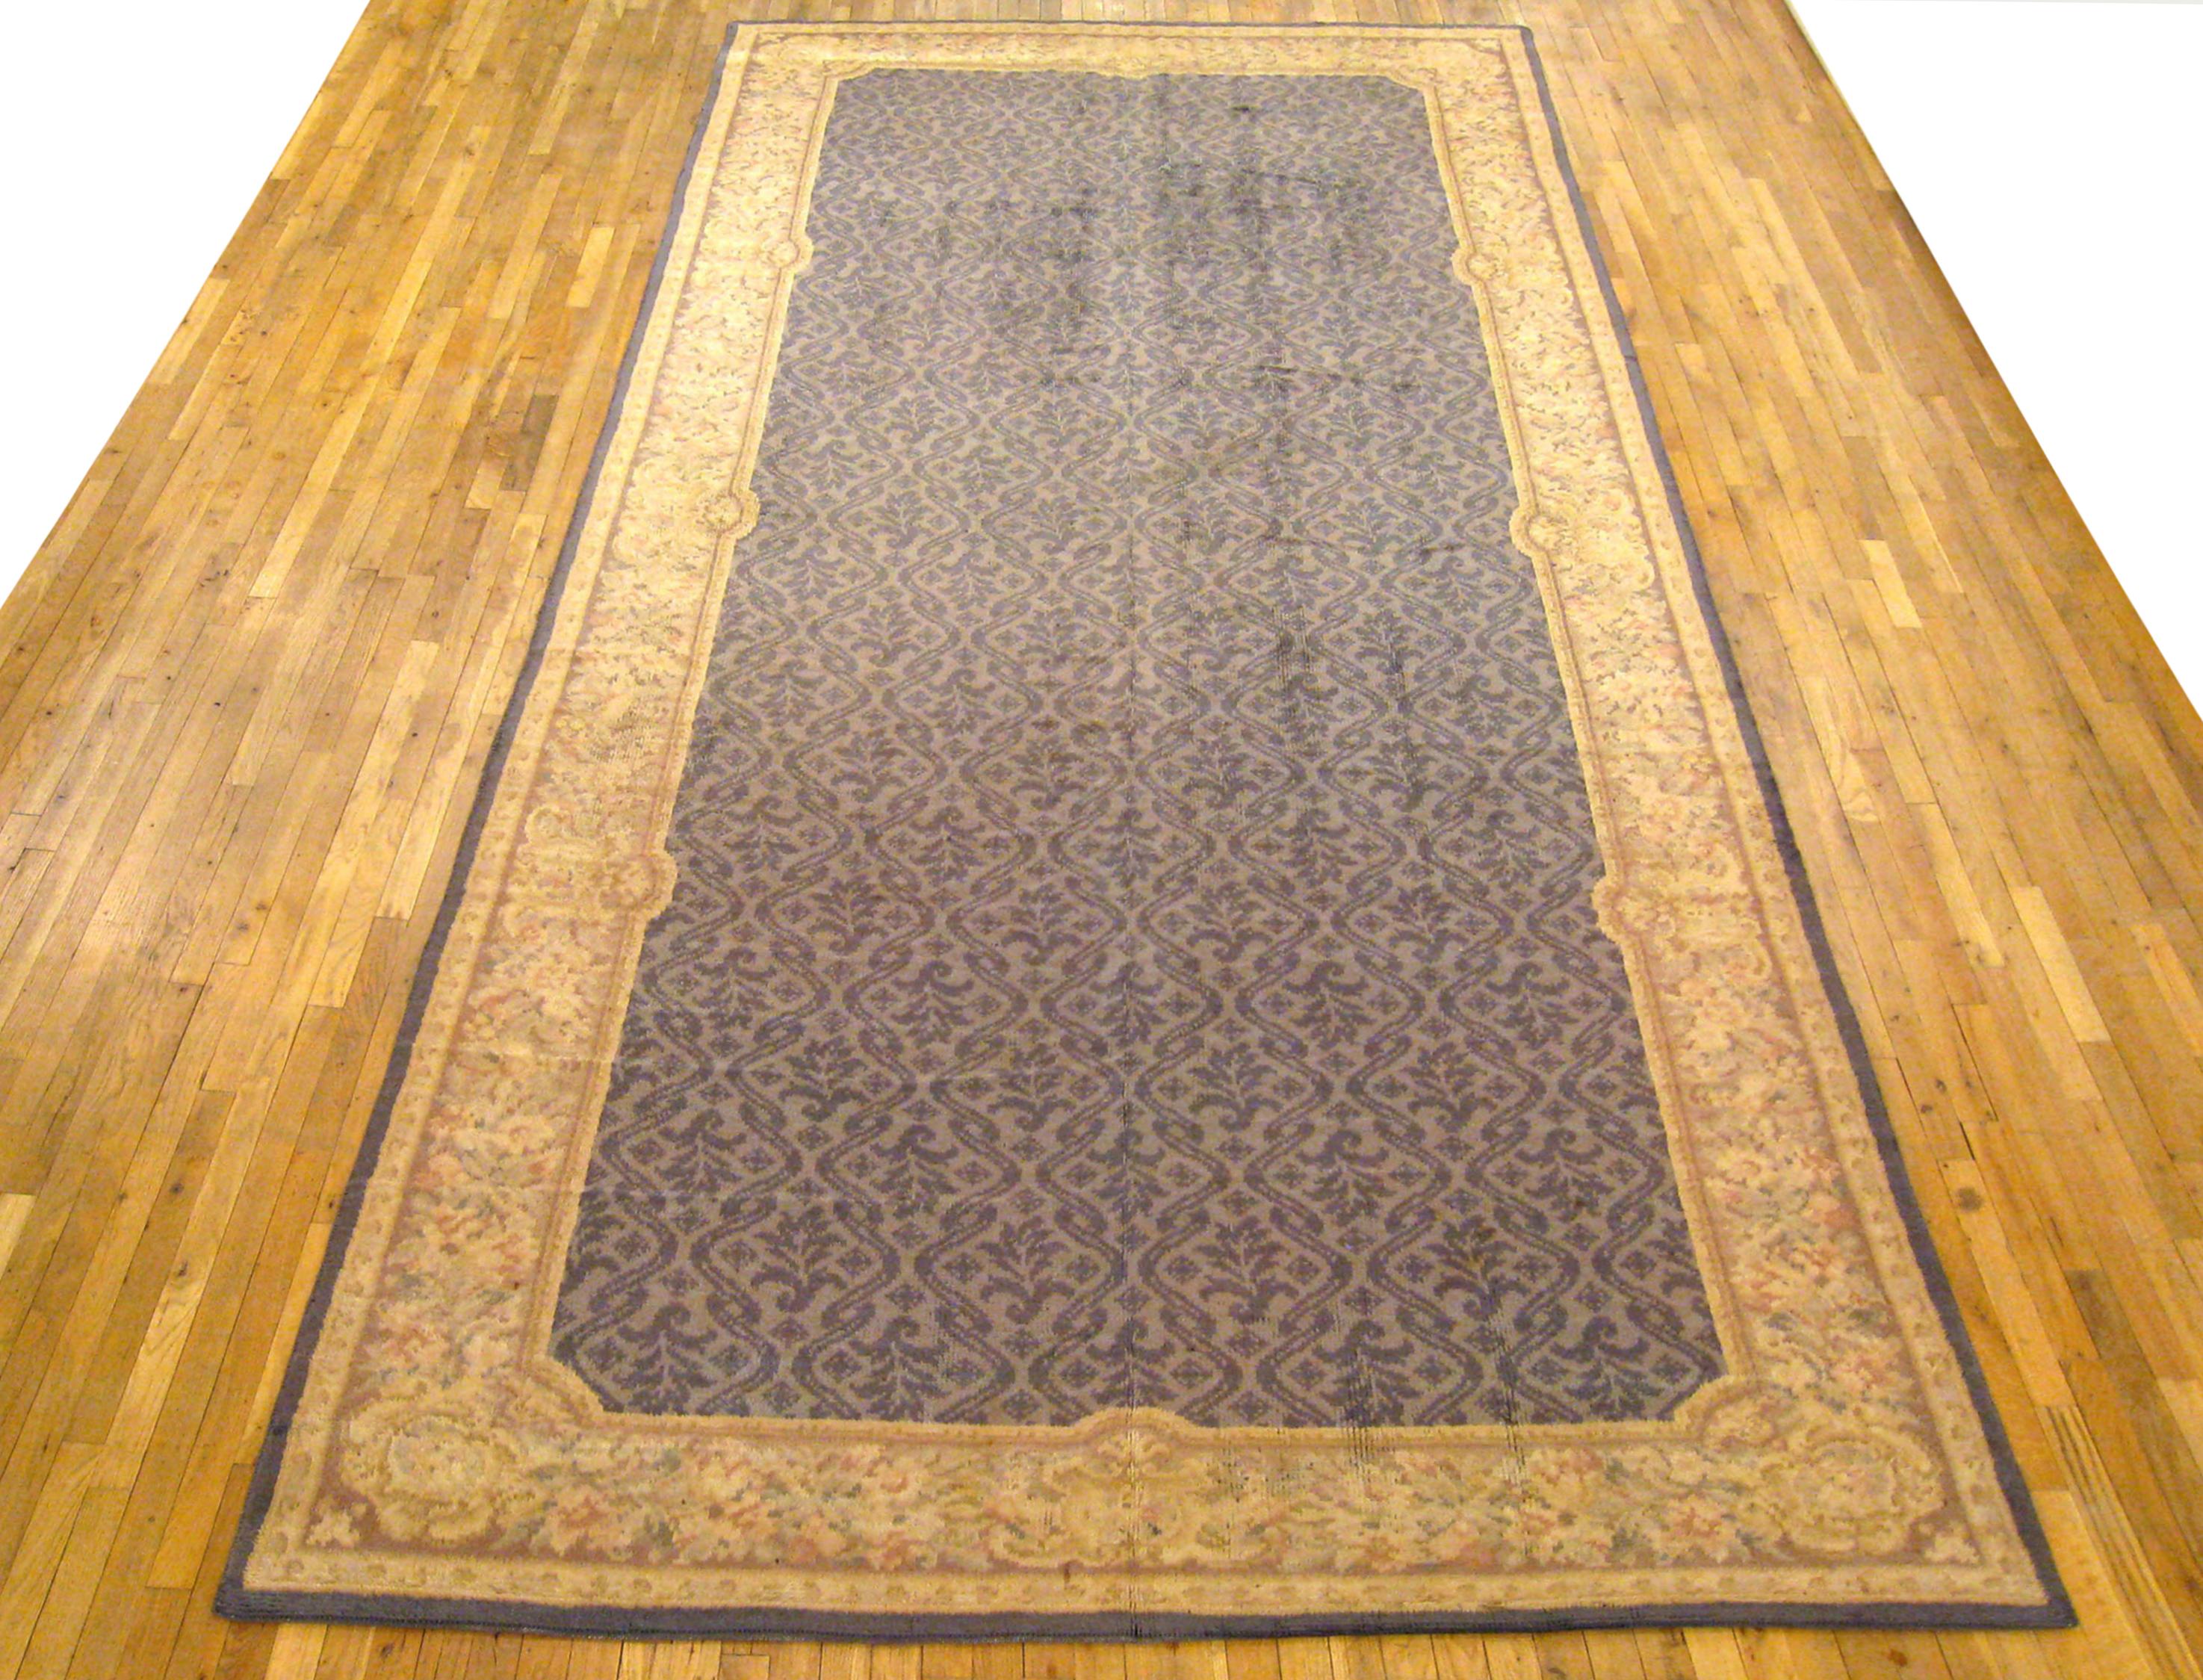 Antiker spanischer Savonnerie-Teppich, Galeriegröße, um 1930

Ein einzigartiger antiker europäischer Savonnerie-Orientalteppich, handgeknüpft mit kurzem Wollflor. Dieser schöne Teppich zeichnet sich durch ein sich wiederholendes Muster auf dem